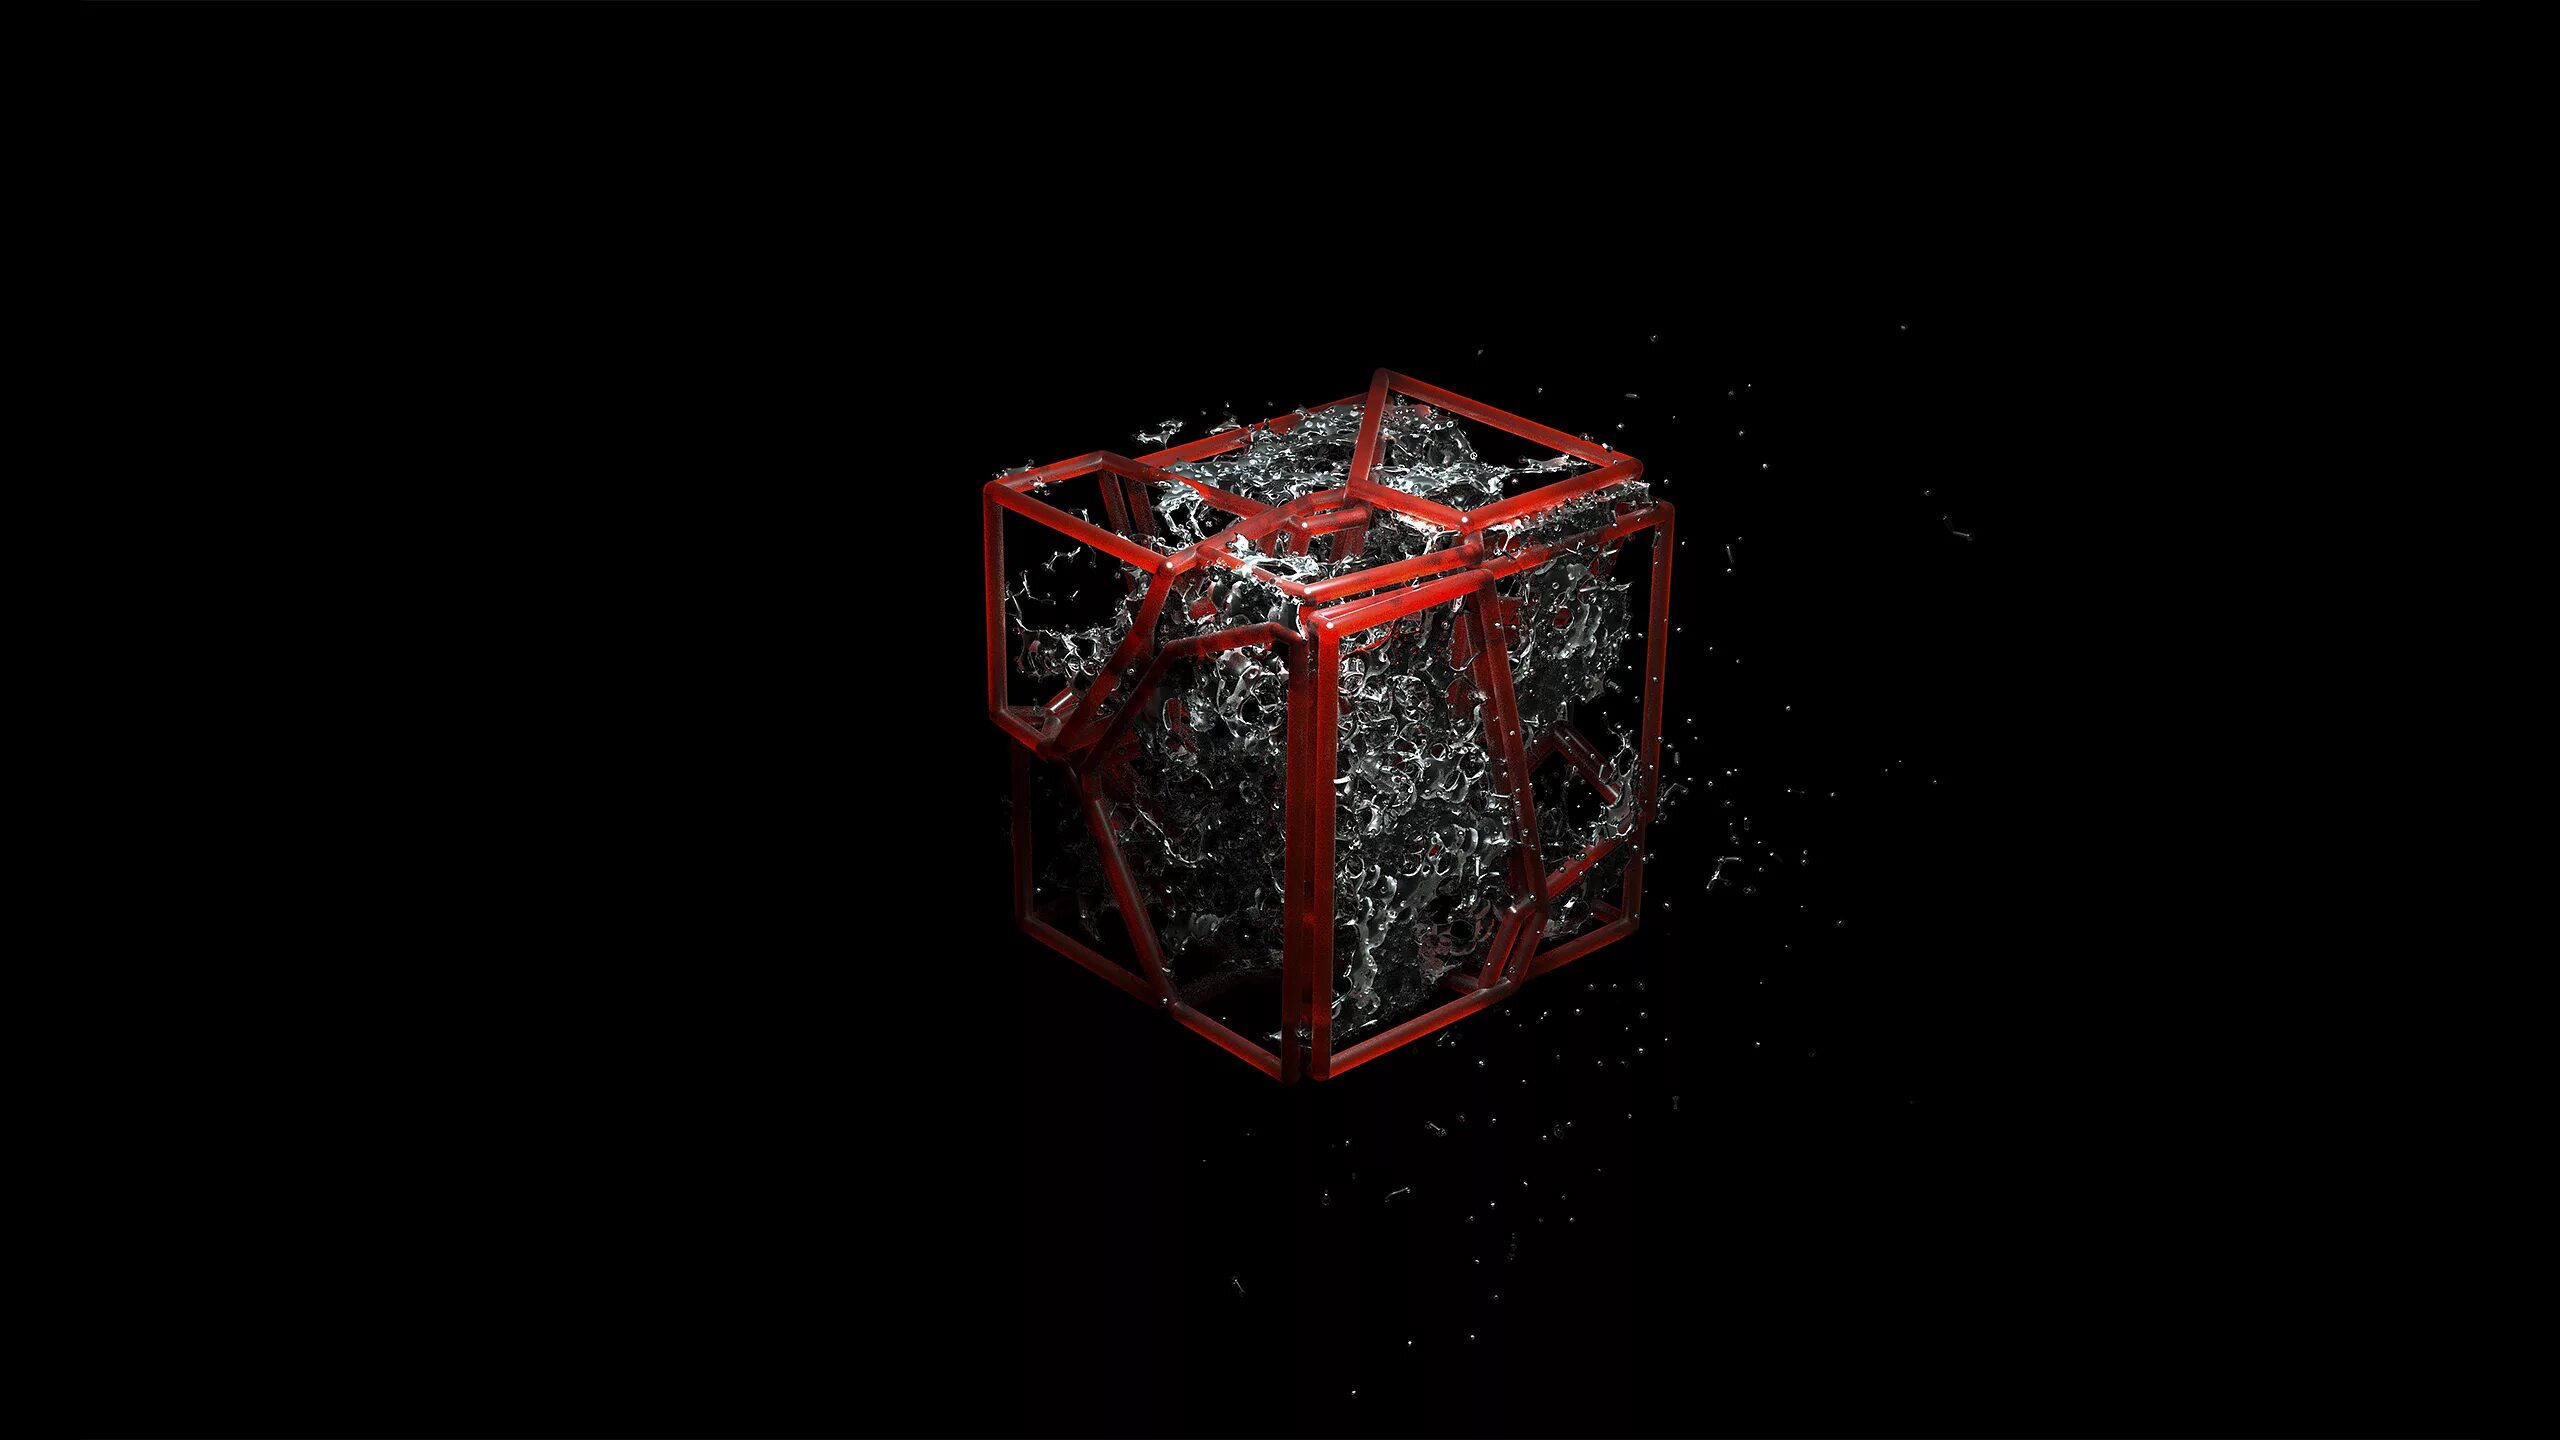 1080 1024. Куб на черном фоне. Трехмерный рабочий стол. Подарок на темном фоне. Красный куб.